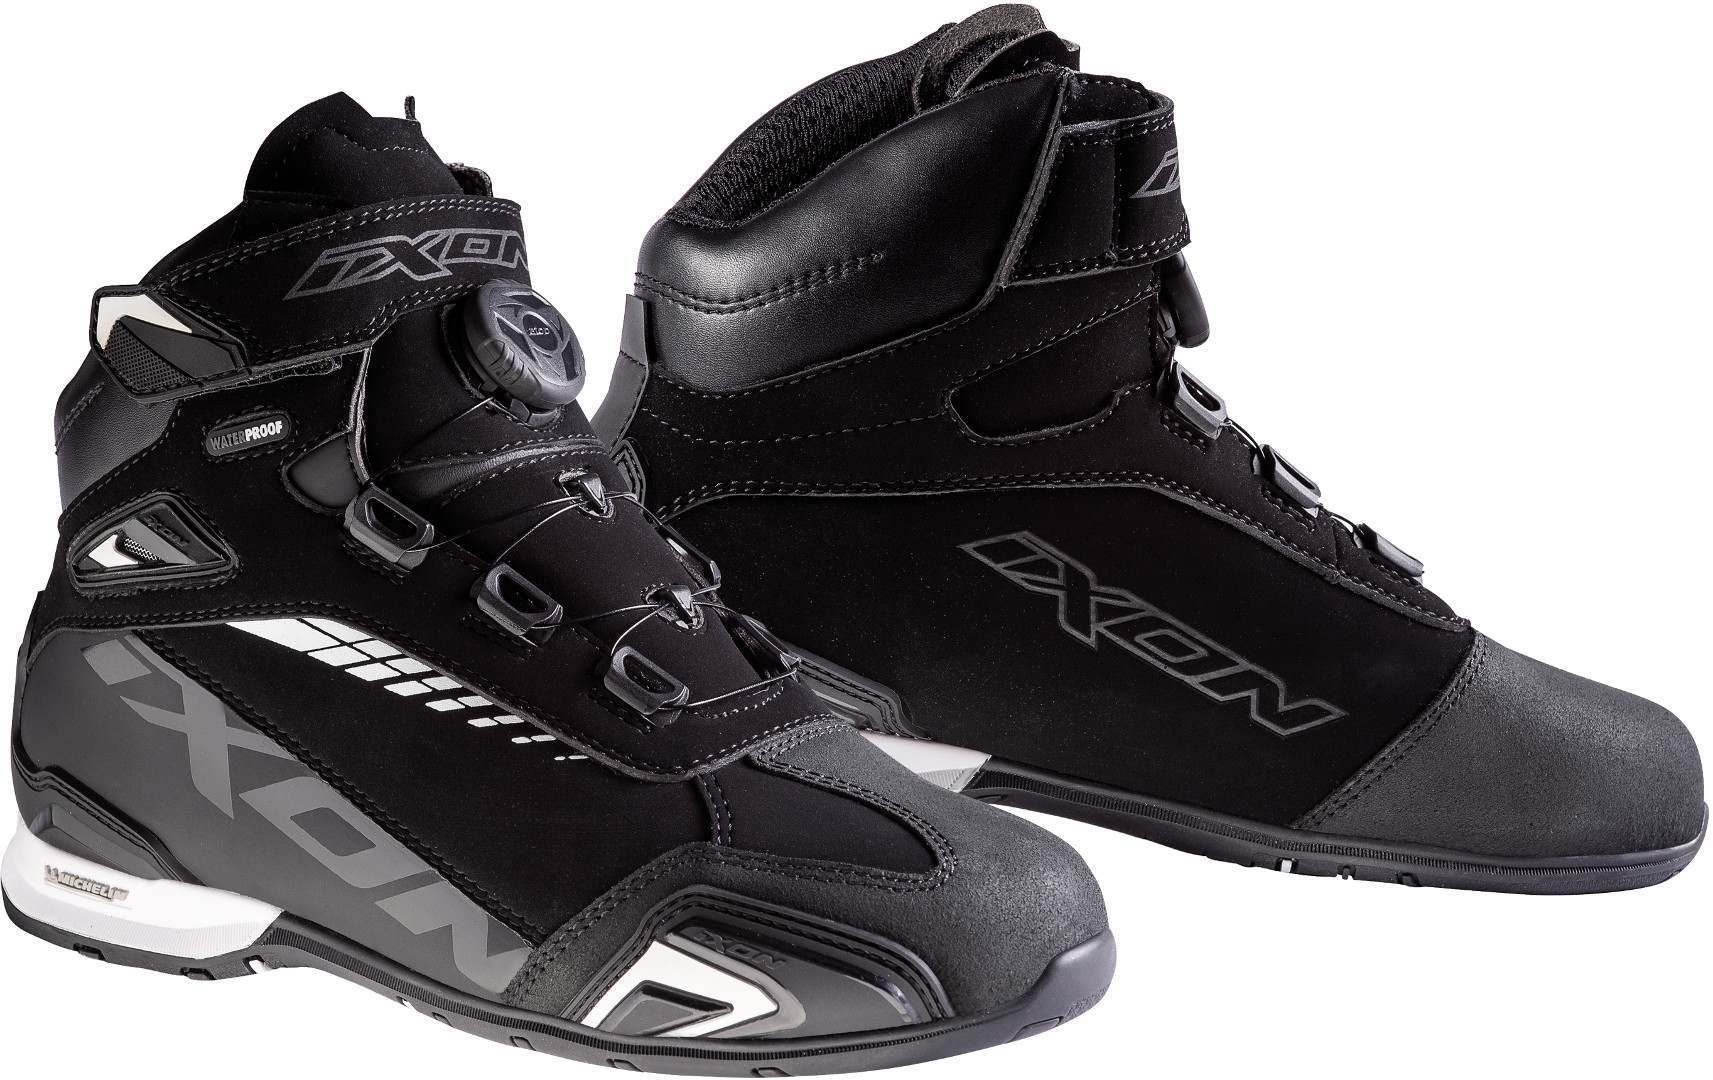 Обувь Ixon Bull WP L для женщин для мотоцикла, черно-белая